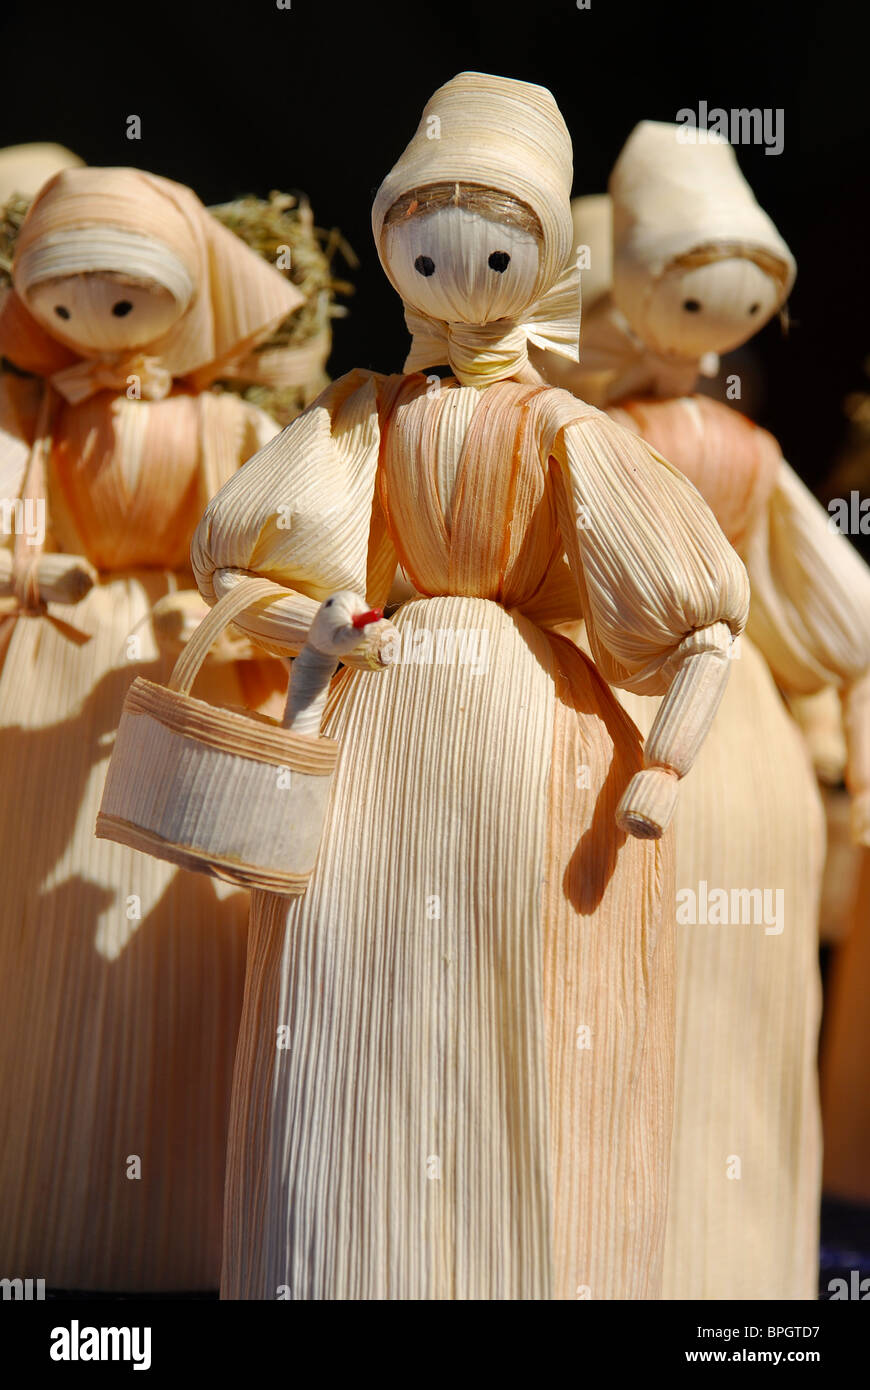 Corn dolls immagini e fotografie stock ad alta risoluzione - Alamy